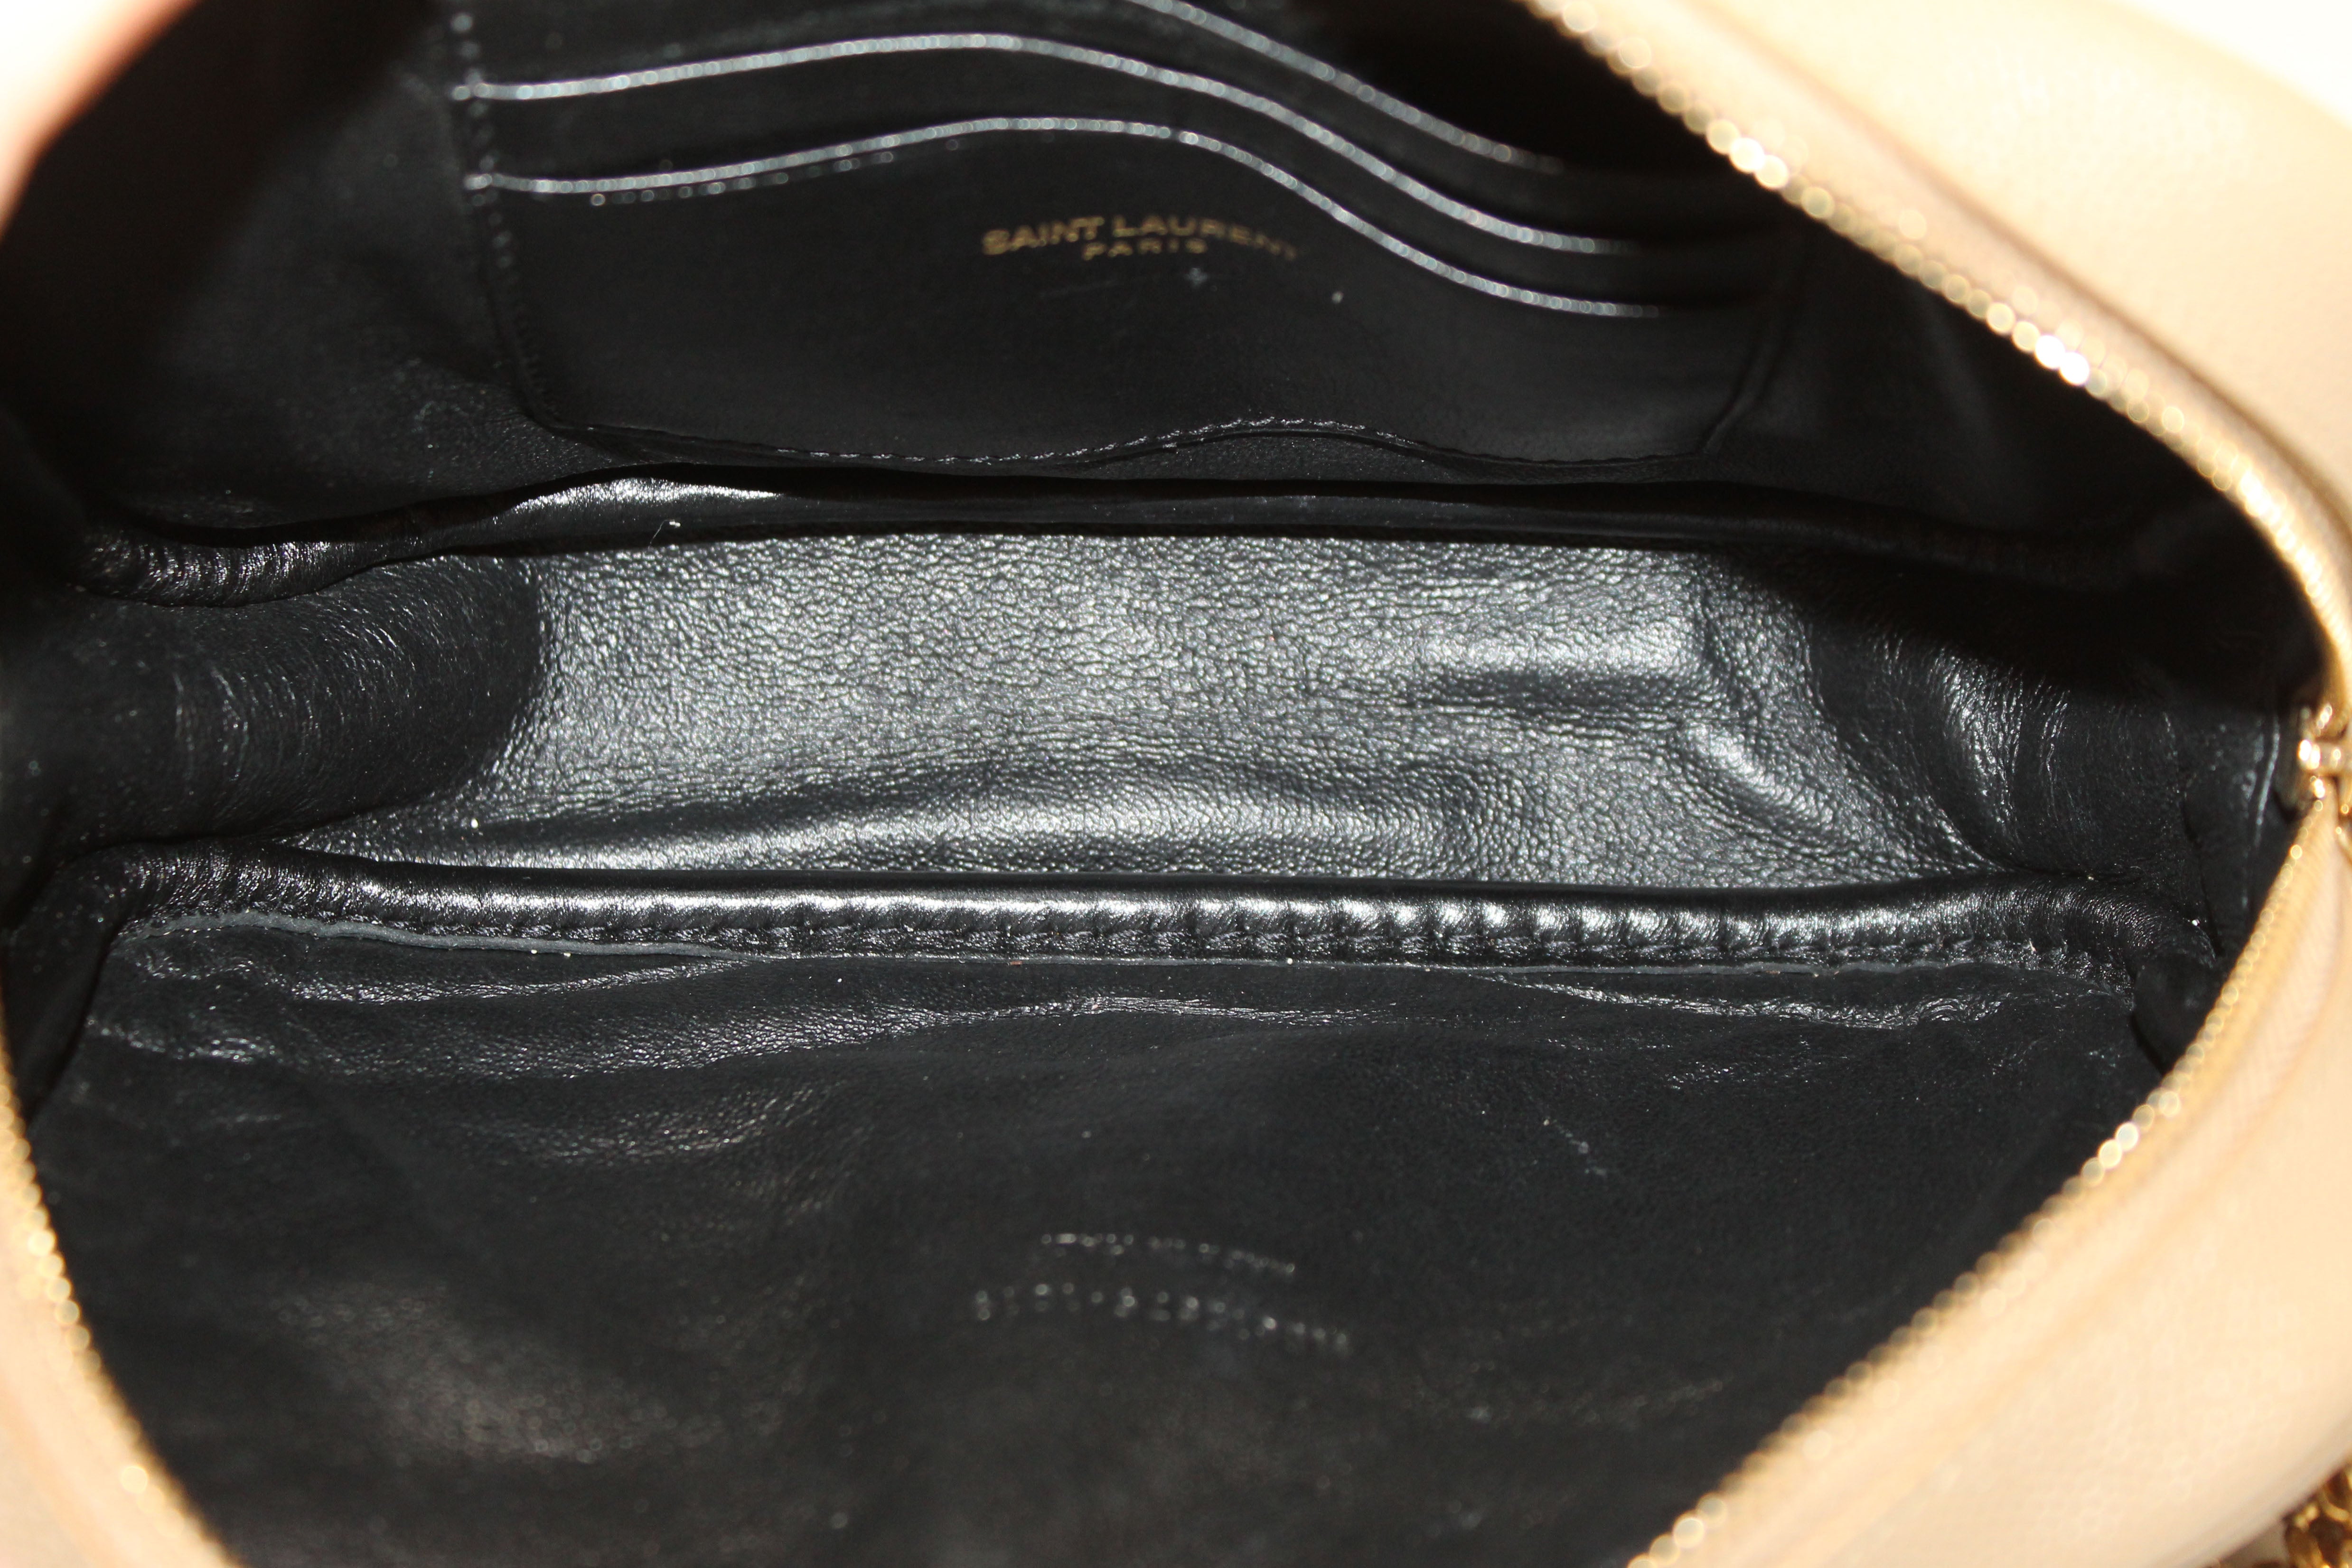 Authentic Saint Laurent Beige Grain Poudre Embossed Leather Lou Mini Bag